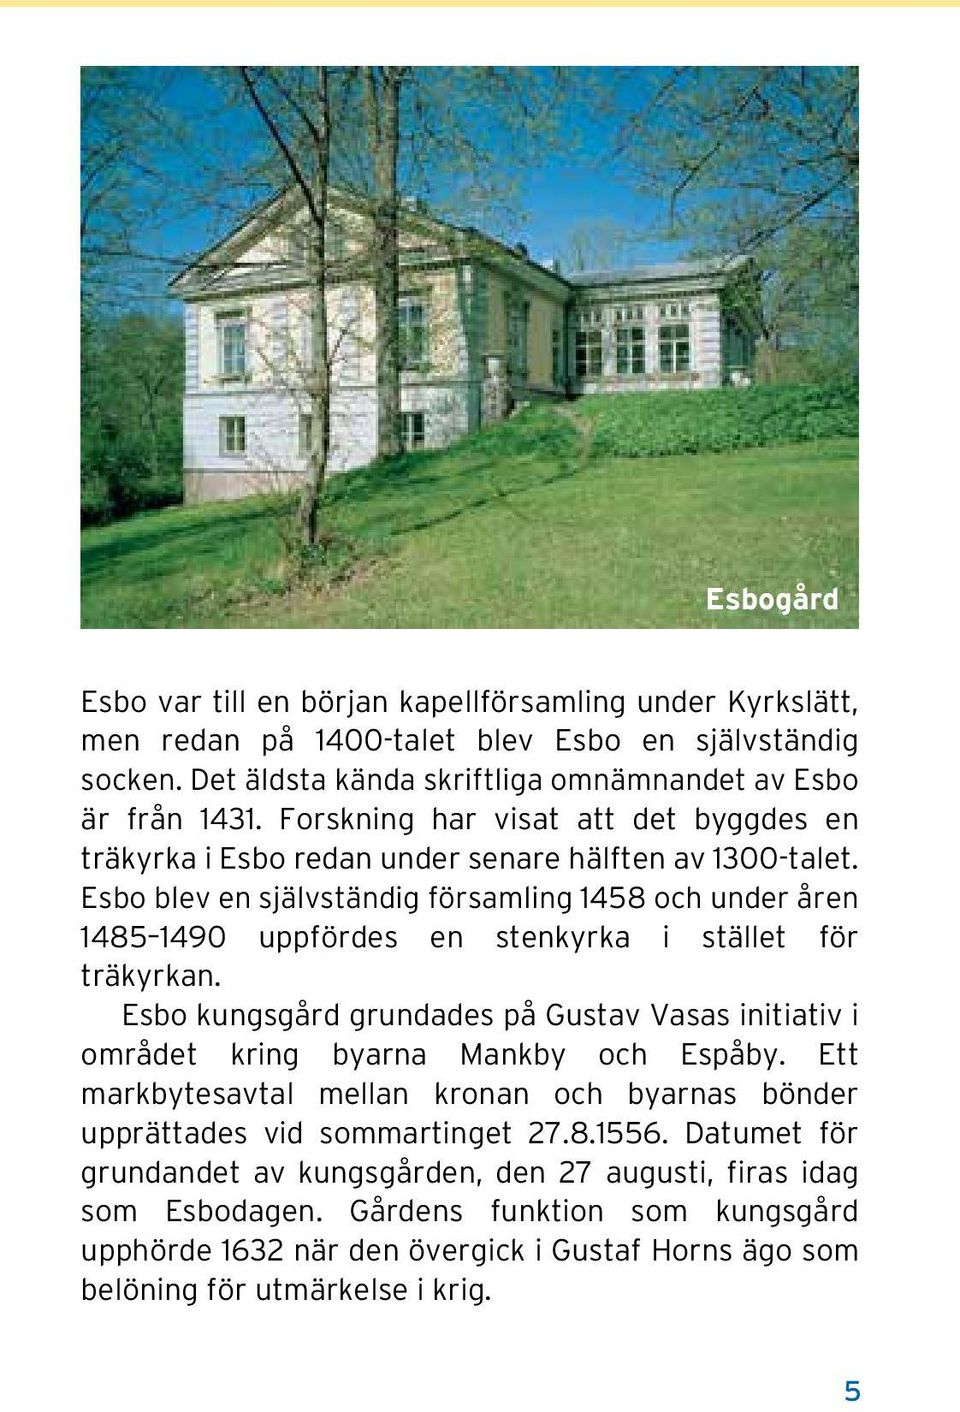 Esbo blev en självständig församling 1458 och under åren 1485 1490 uppfördes en stenkyrka i stället för träkyrkan.